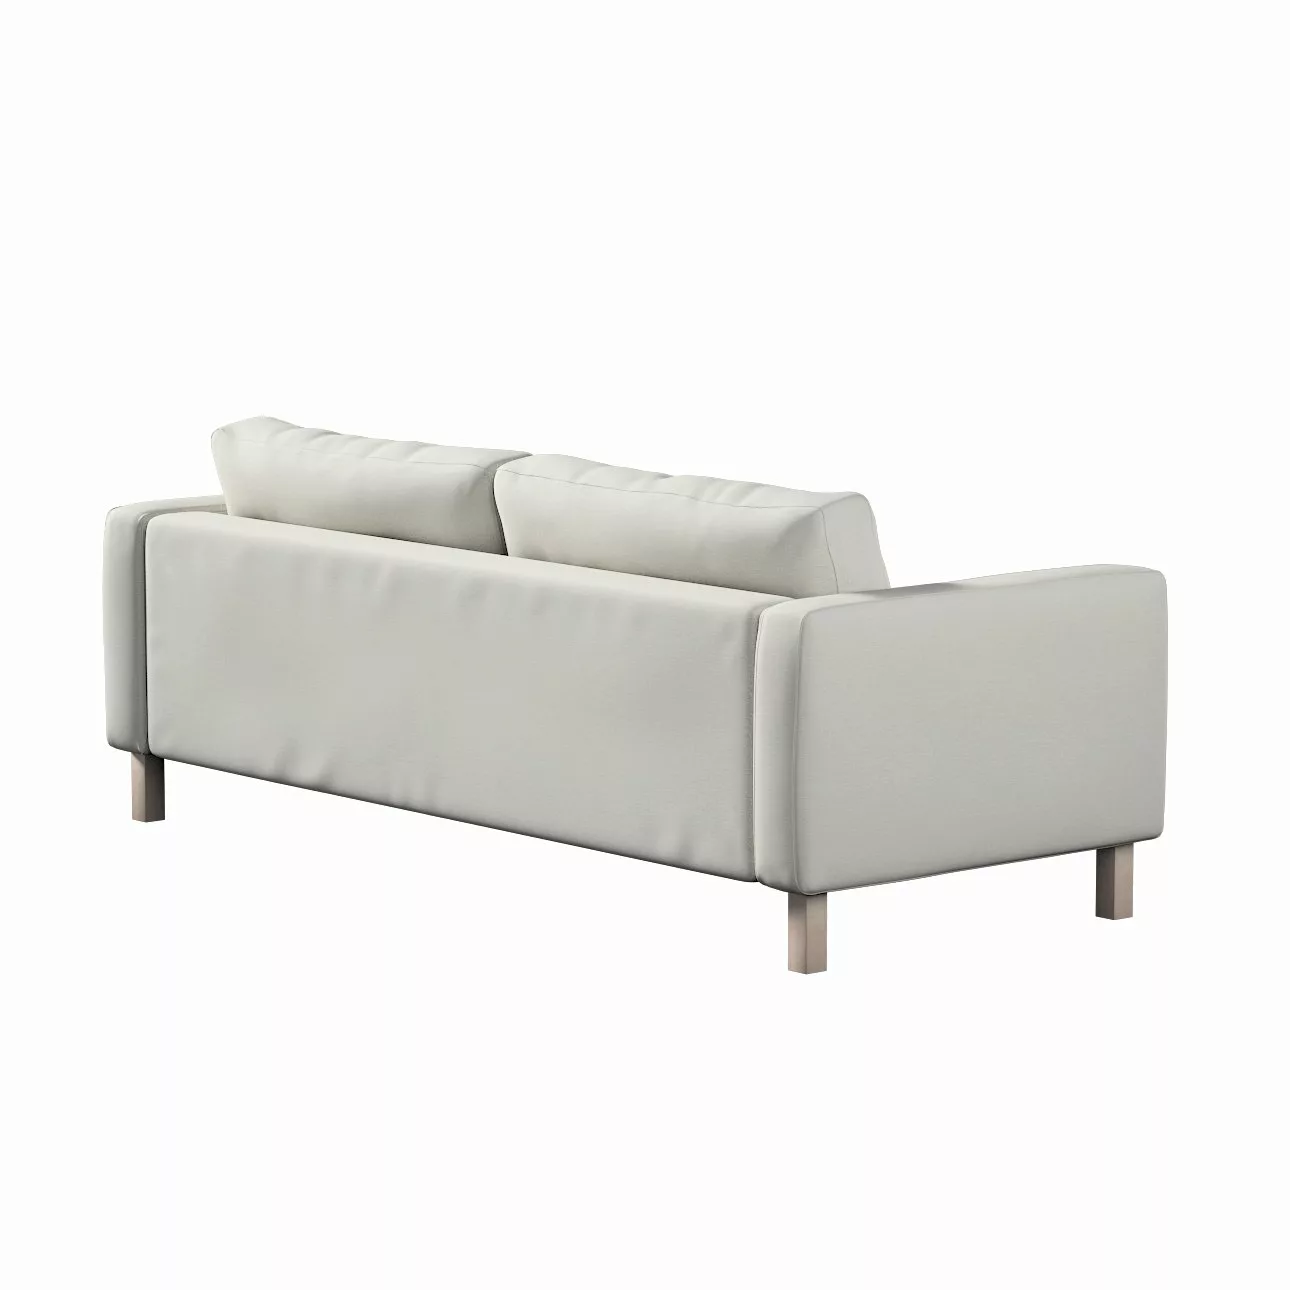 Bezug für Karlstad 3-Sitzer Sofa nicht ausklappbar, kurz, mittelgrau, Bezug günstig online kaufen